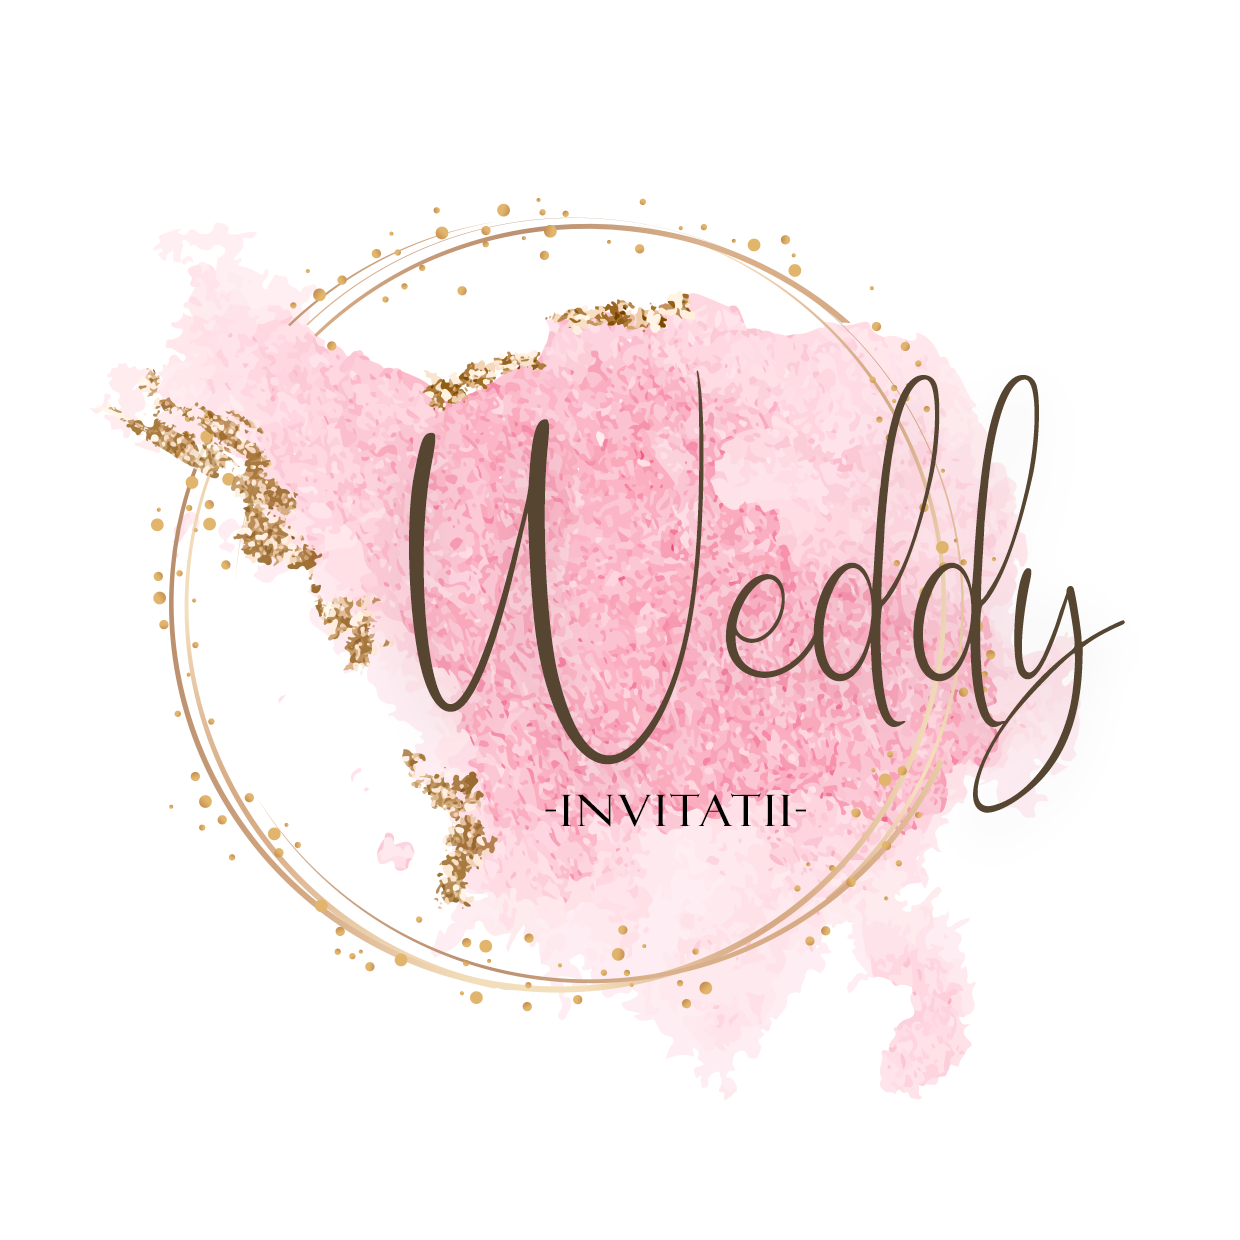 Weddy - Invitatii de Nunta